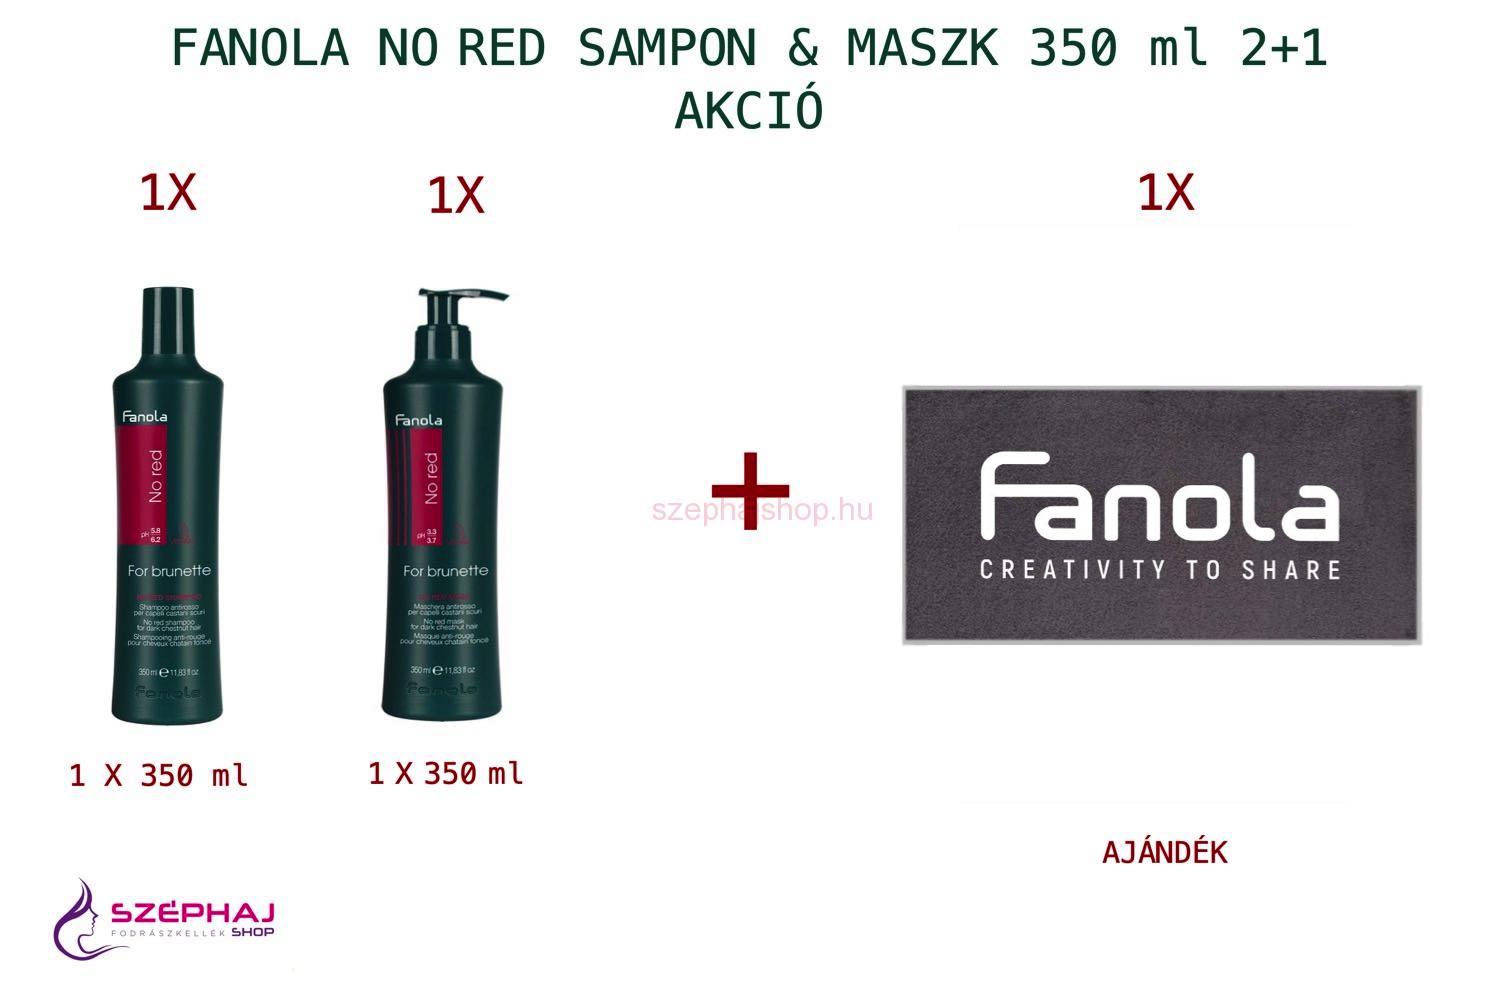 FANOLA No Red For Brunette Sampon & Maszk 350 ml 2+1 AKCIÓ